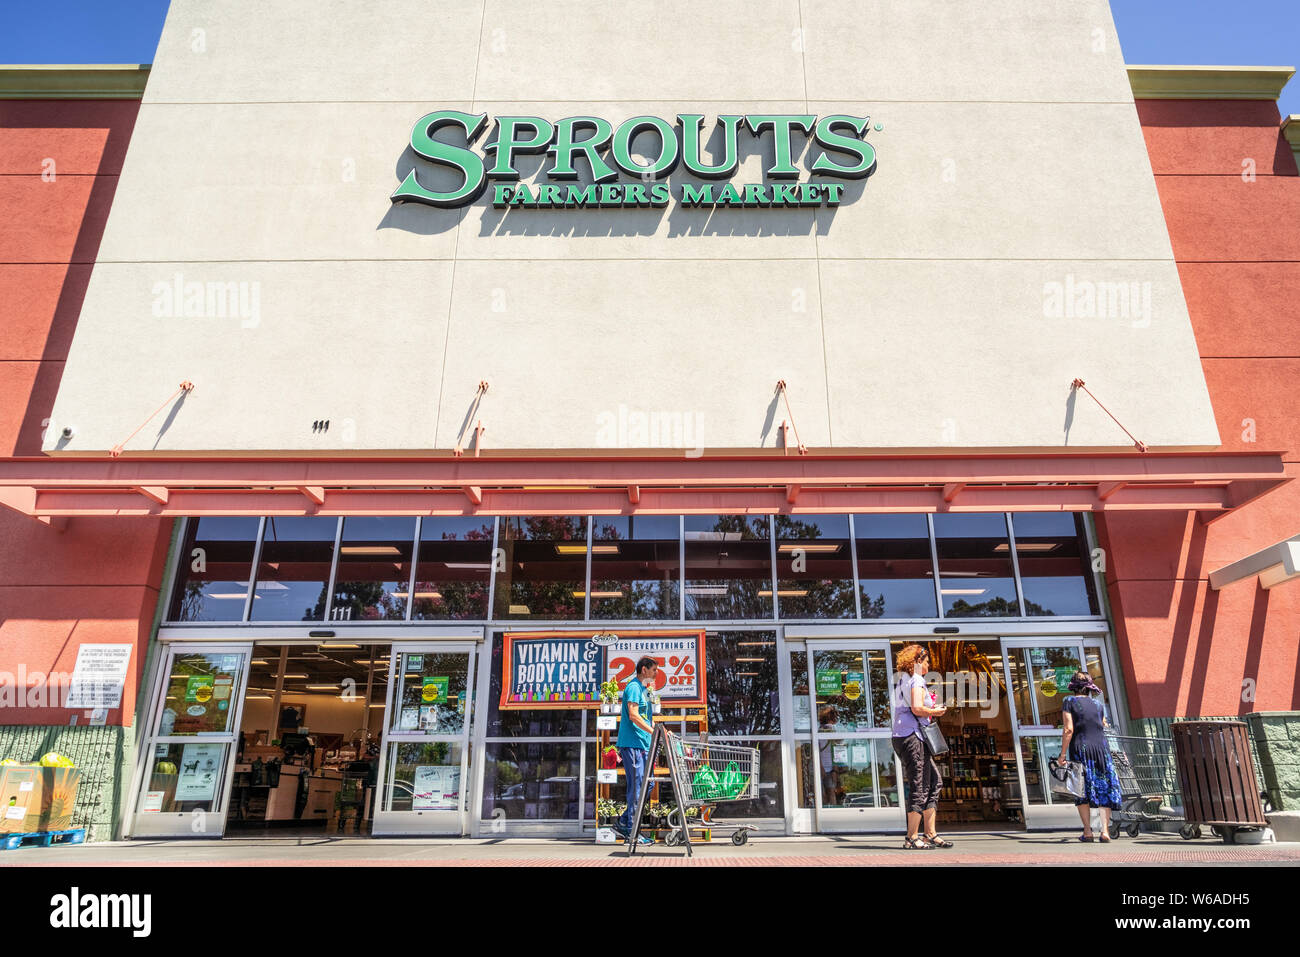 Luglio 31, 2019 Sunnyvale / CA / USA - Ingresso a uno dei germogli mercato agricolo il supermarket si trova nella parte sud di San Francisco Bay Area Foto Stock